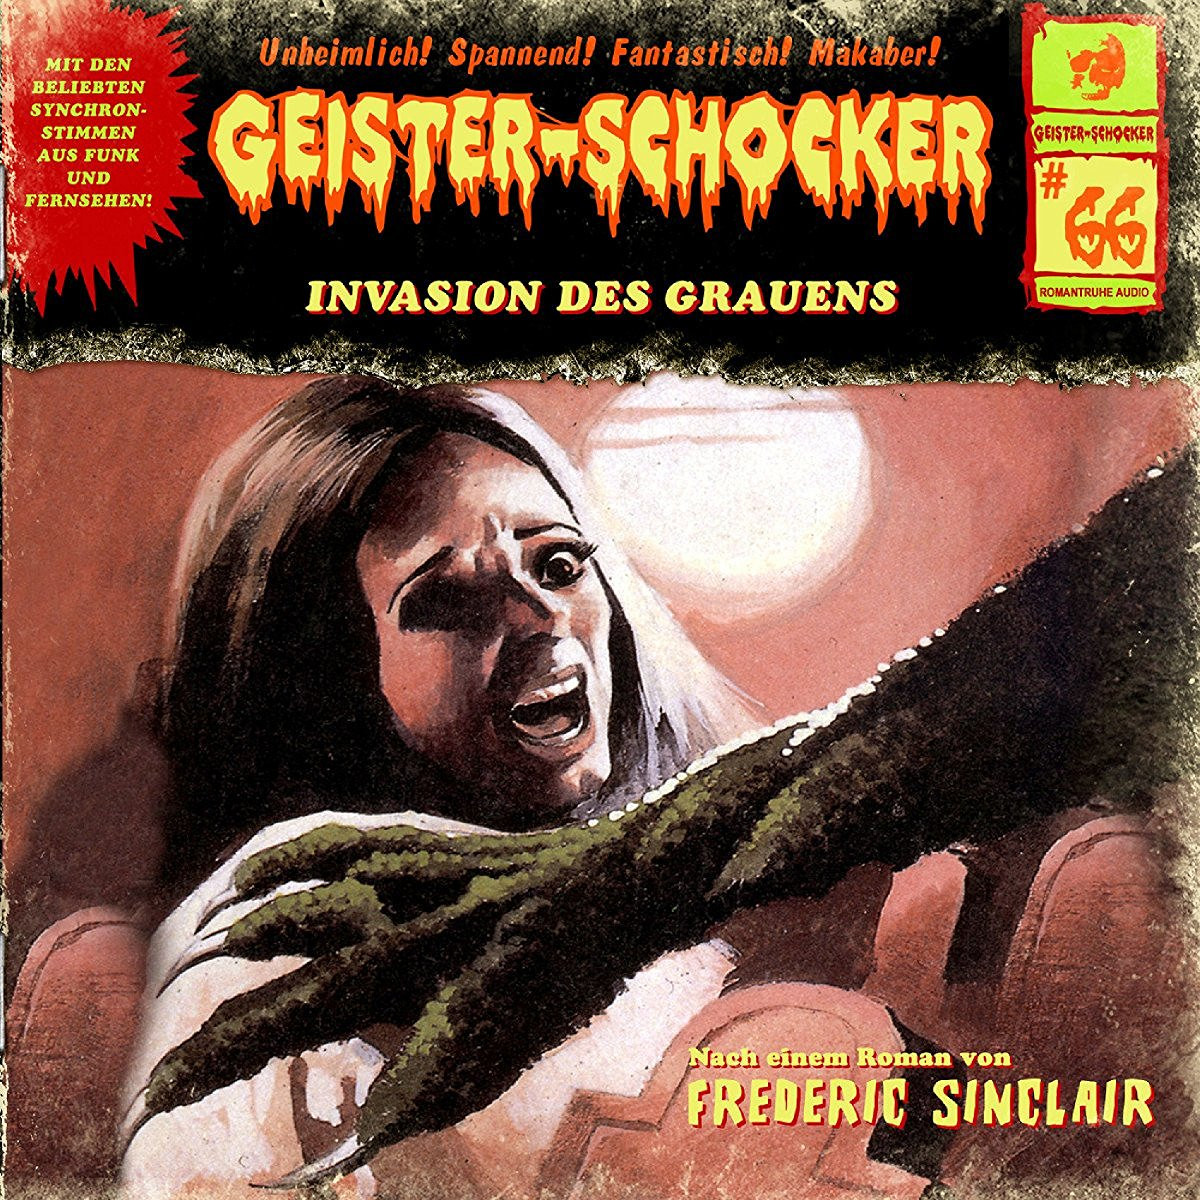 Geister-Schocker 66 Invasion des Grauens